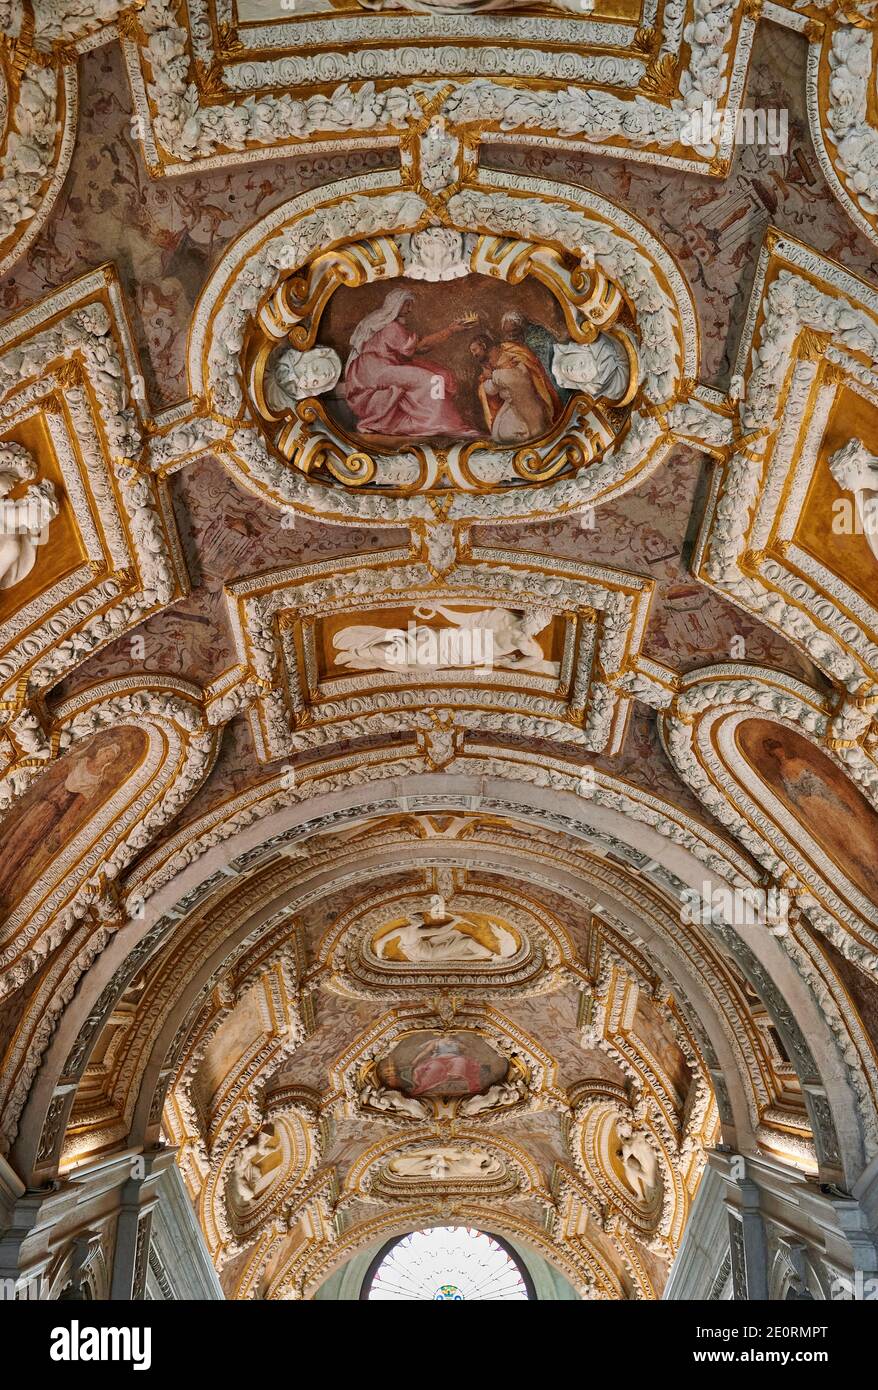 Peinture de plafond et stuc dans l'escalier Scala d'Oro, Palais des Doges, Palazzo Ducale, Venise, Vénétie, Italie Banque D'Images